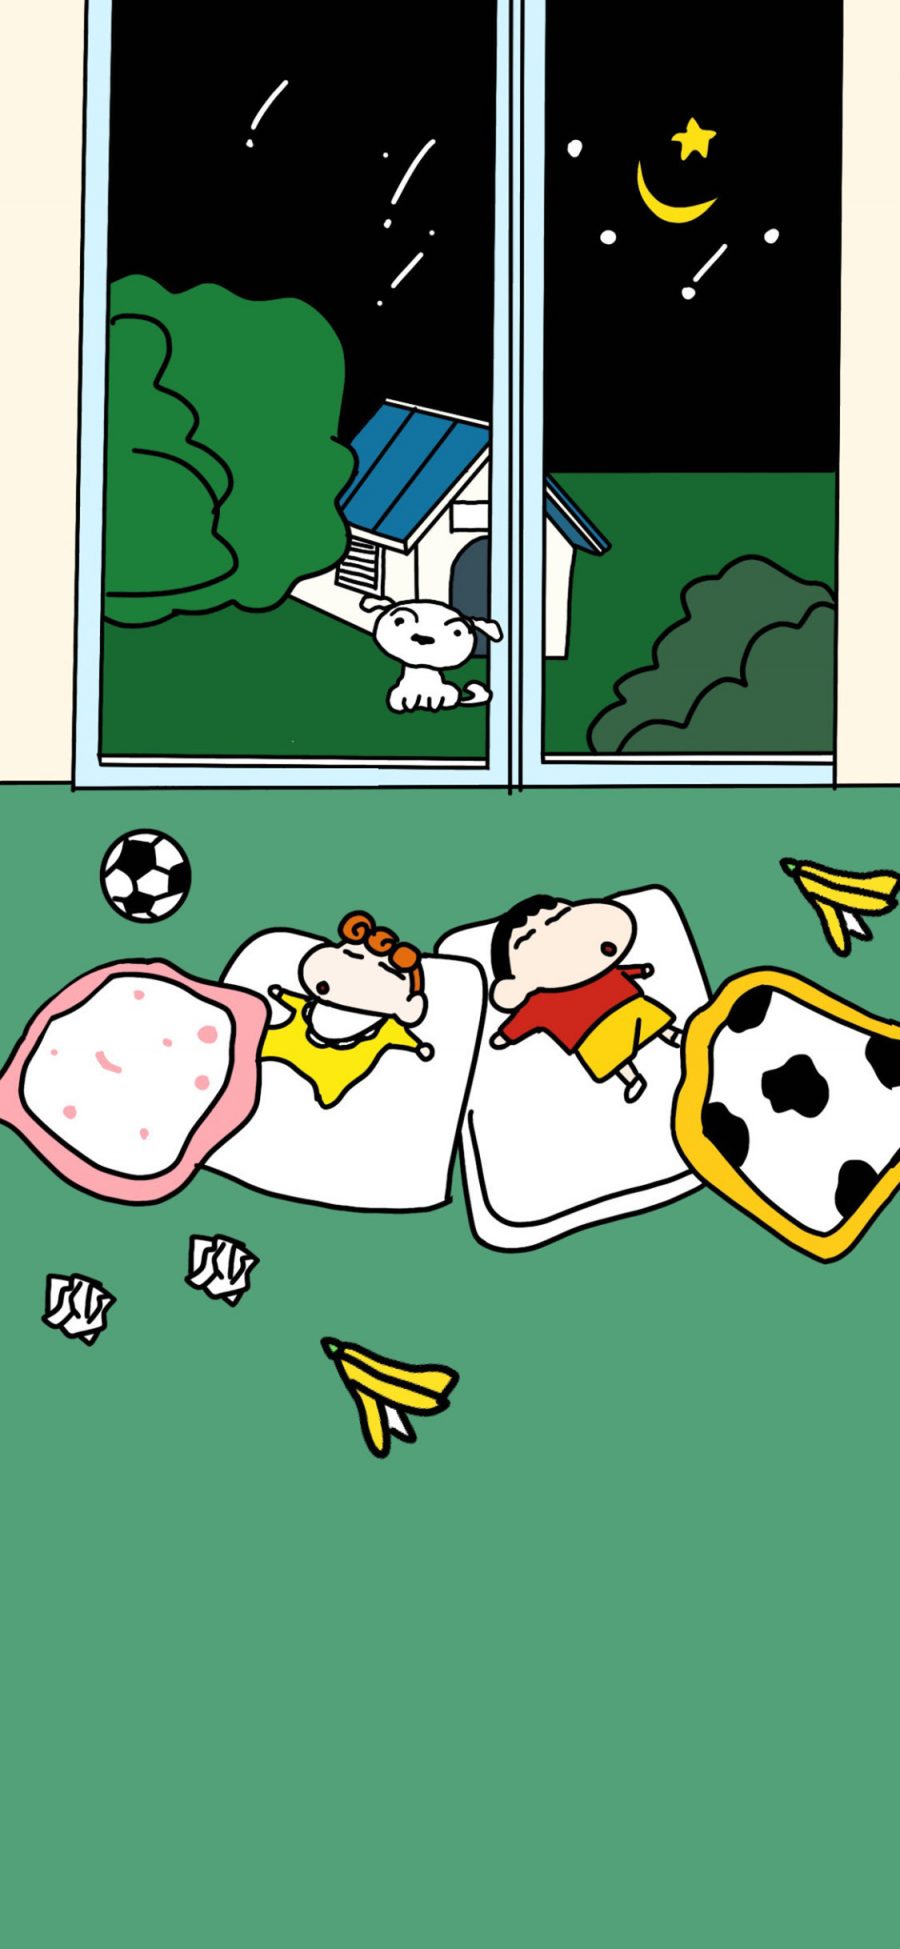 [2436×1125]日漫 蜡笔小新 小葵 睡觉（取自微博：快乐星球在逃居民） 苹果手机动漫壁纸图片